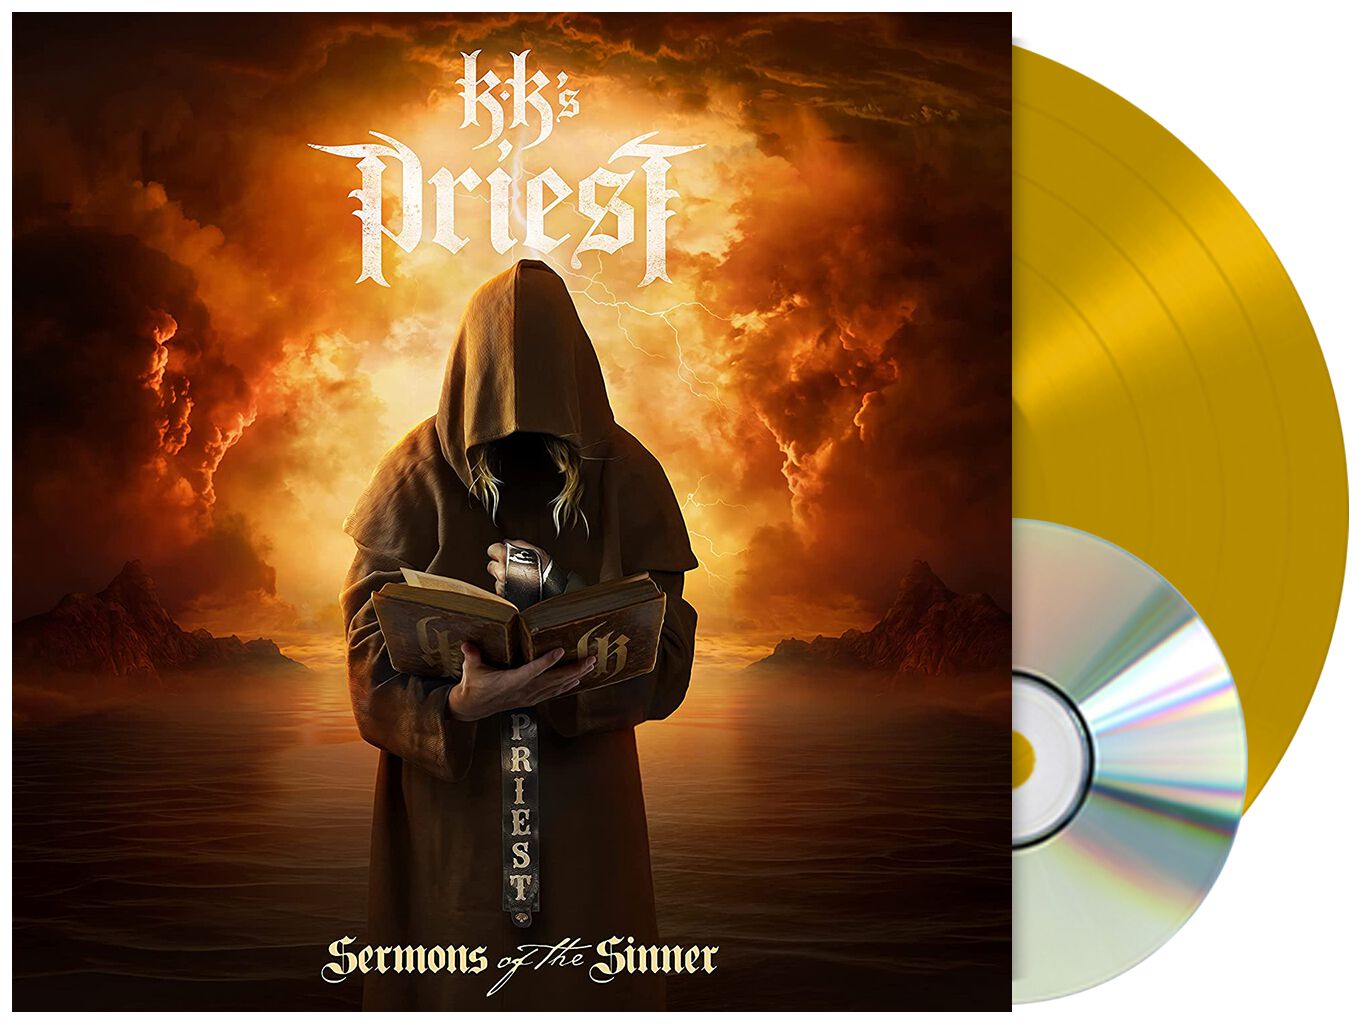 KK's Priest Sermons of the sinner LP gold coloured